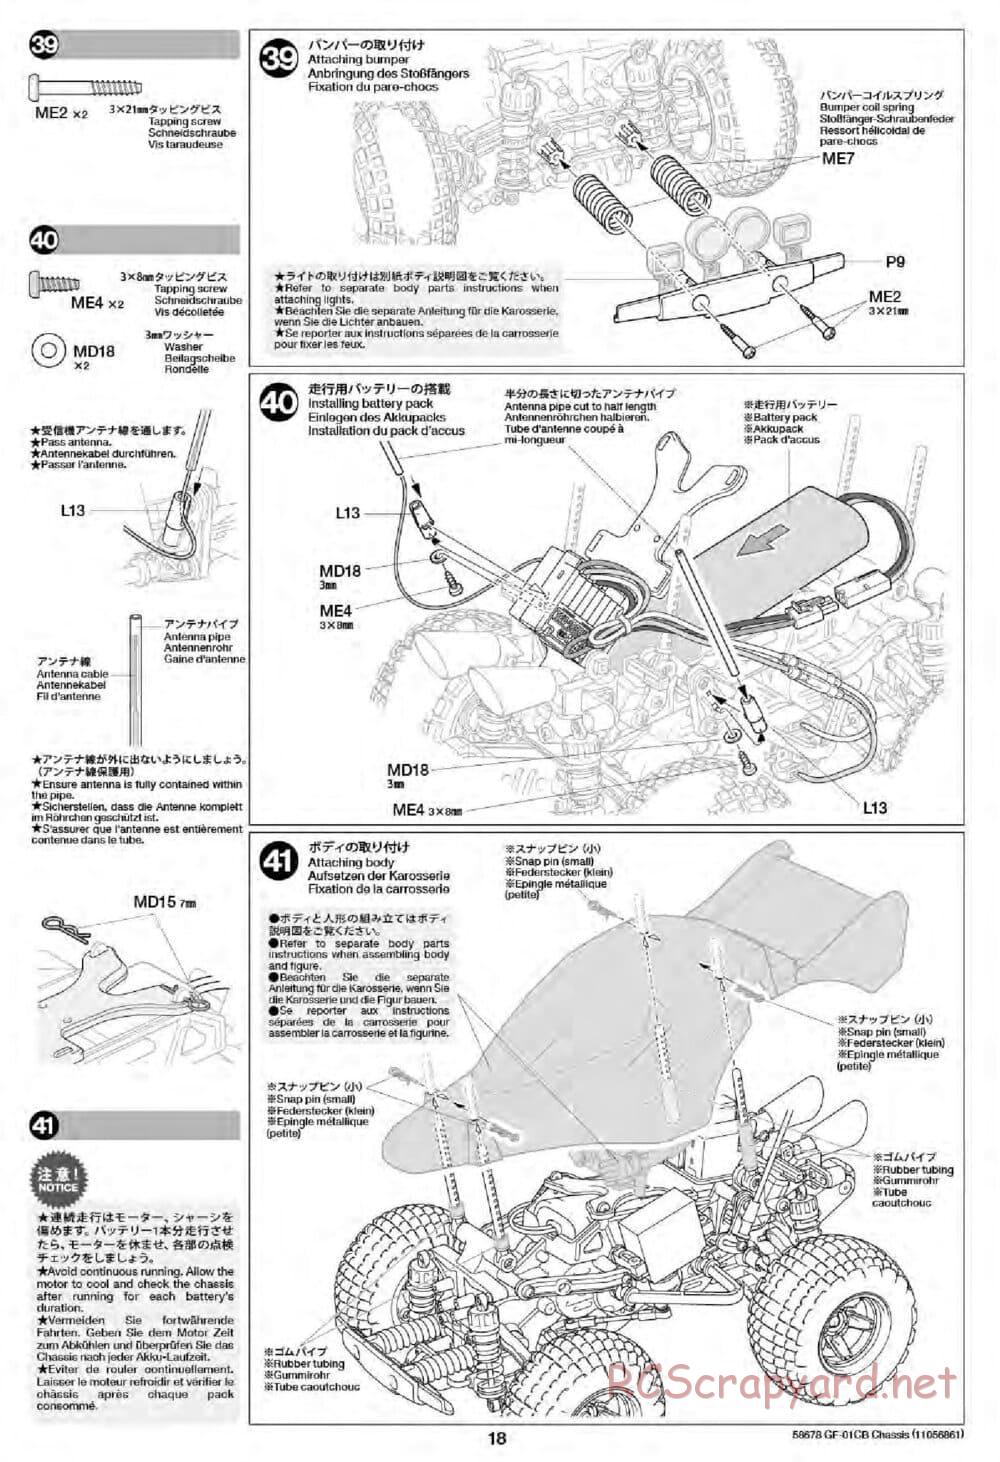 Tamiya - GF-01CB Chassis - Manual - Page 20